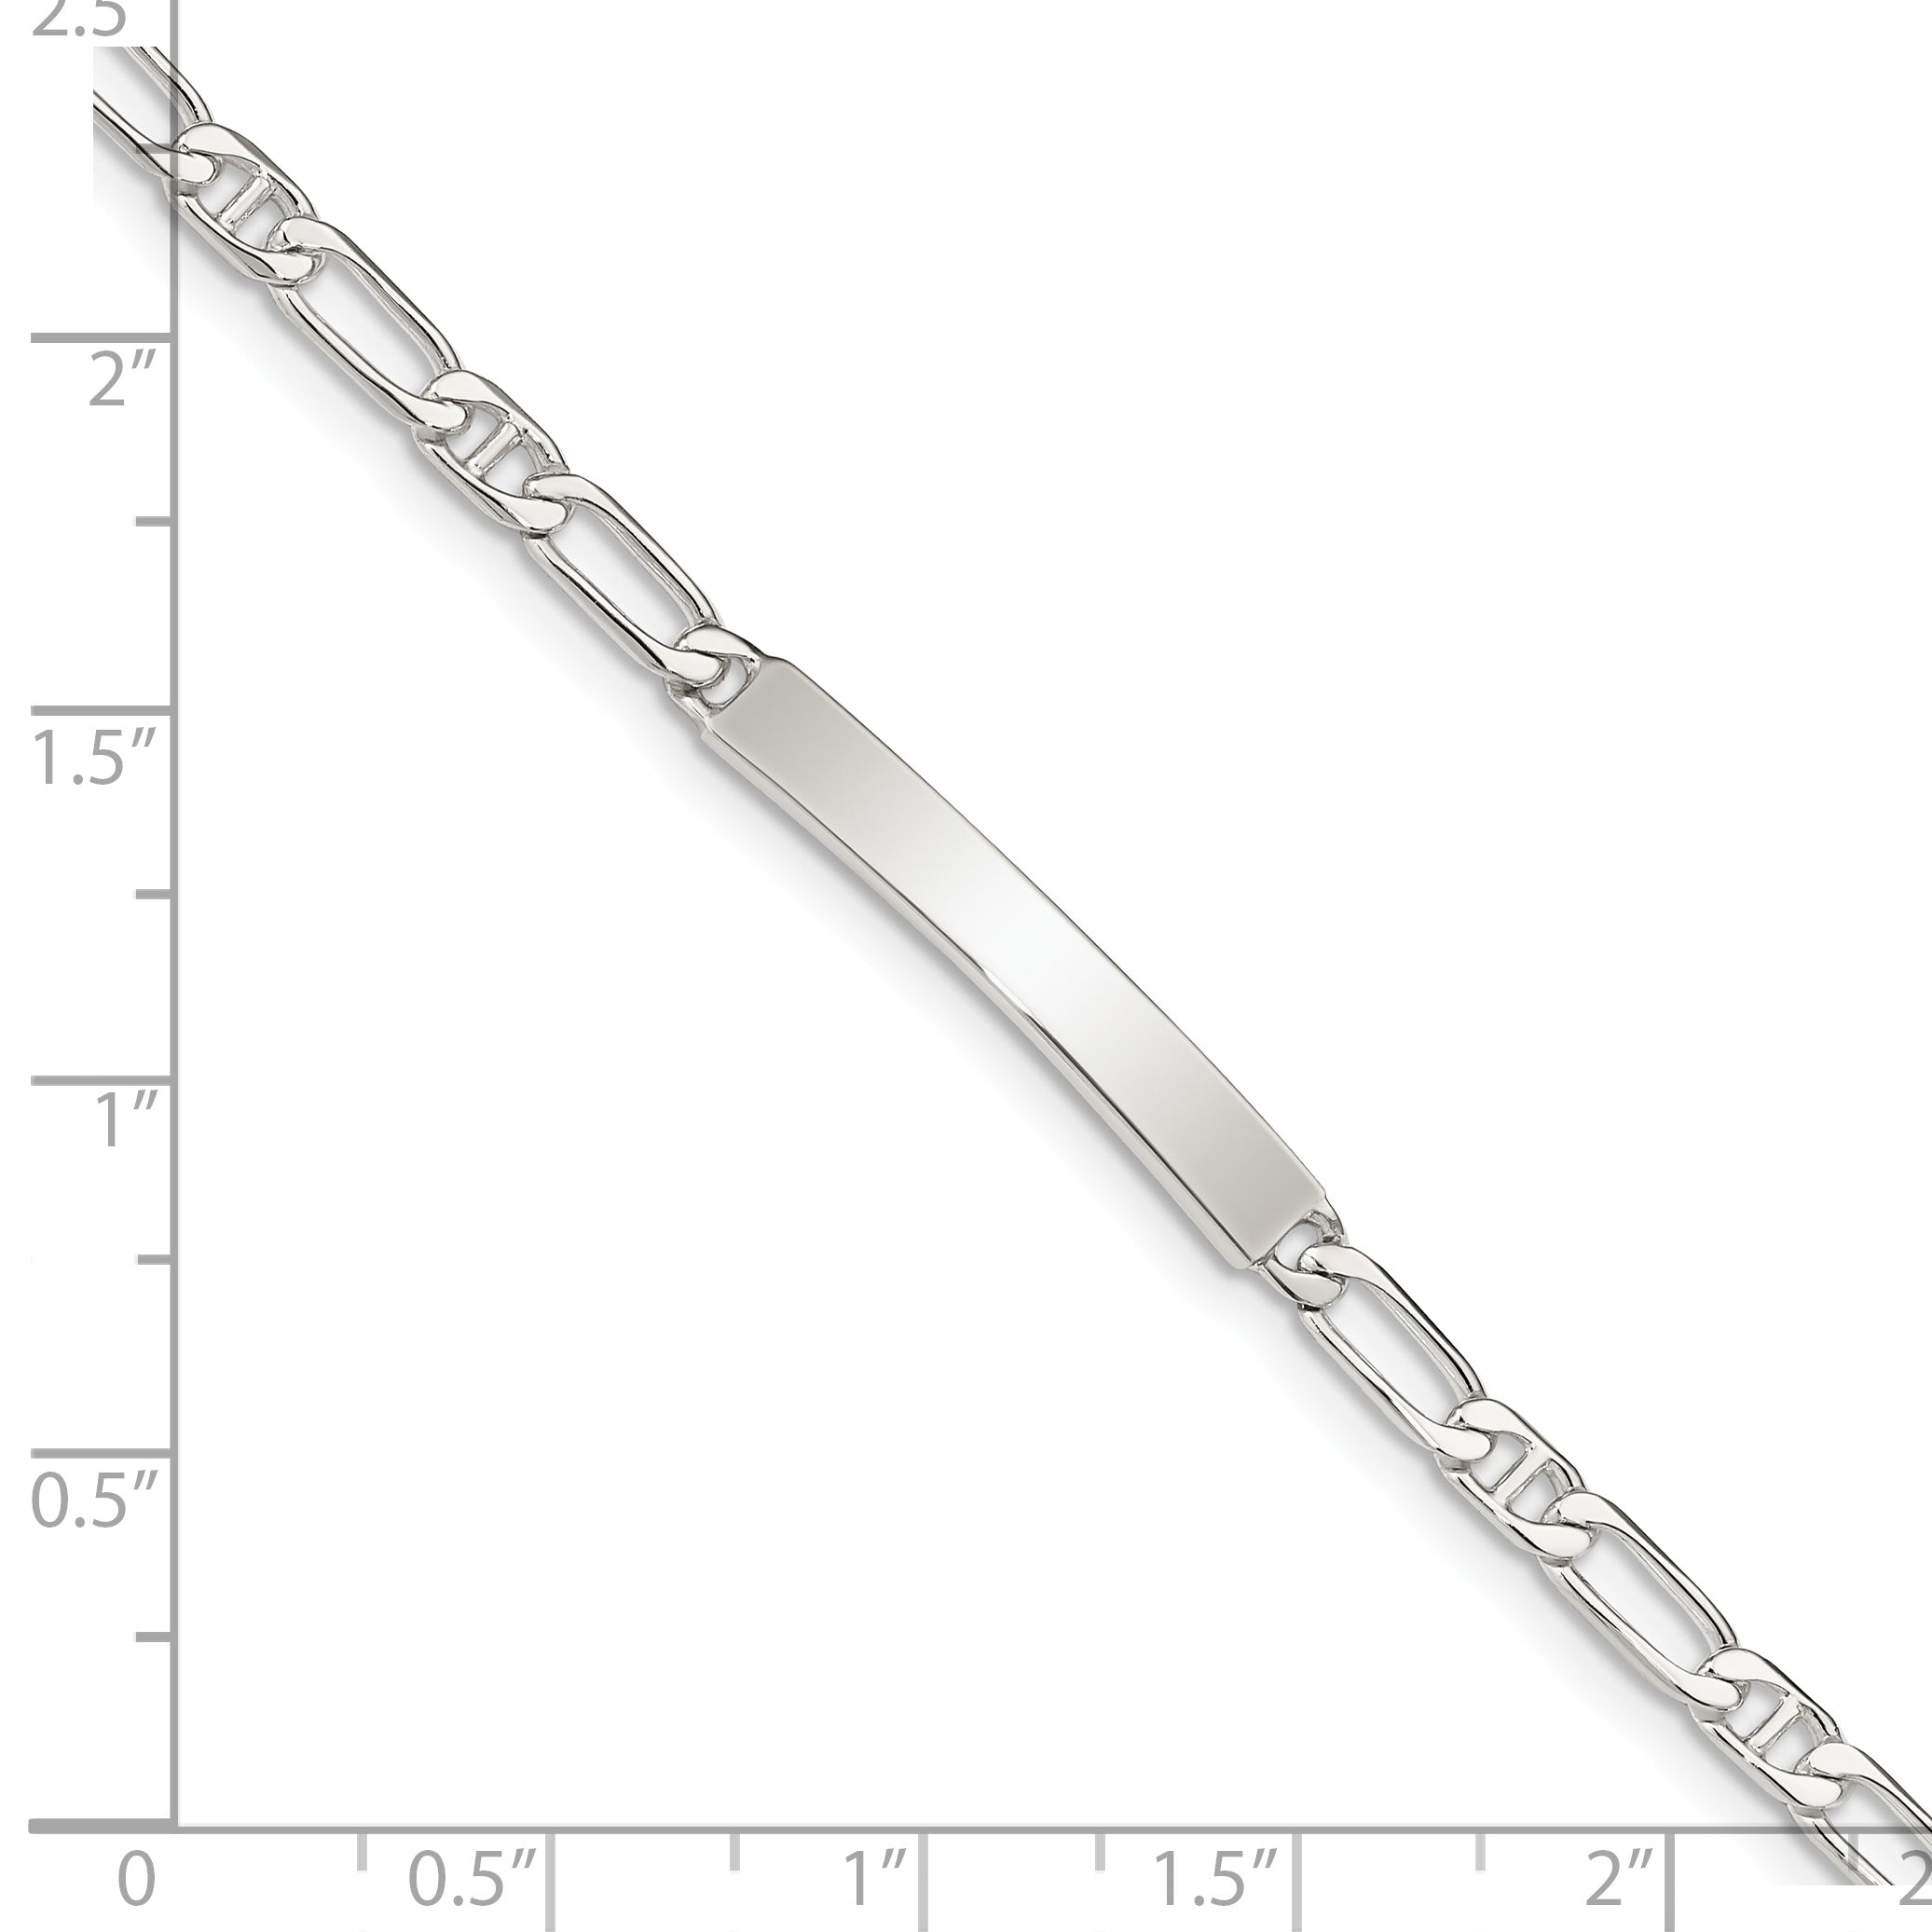 Sterling Silver Polished Engraveable Anchor Link ID Bracelet